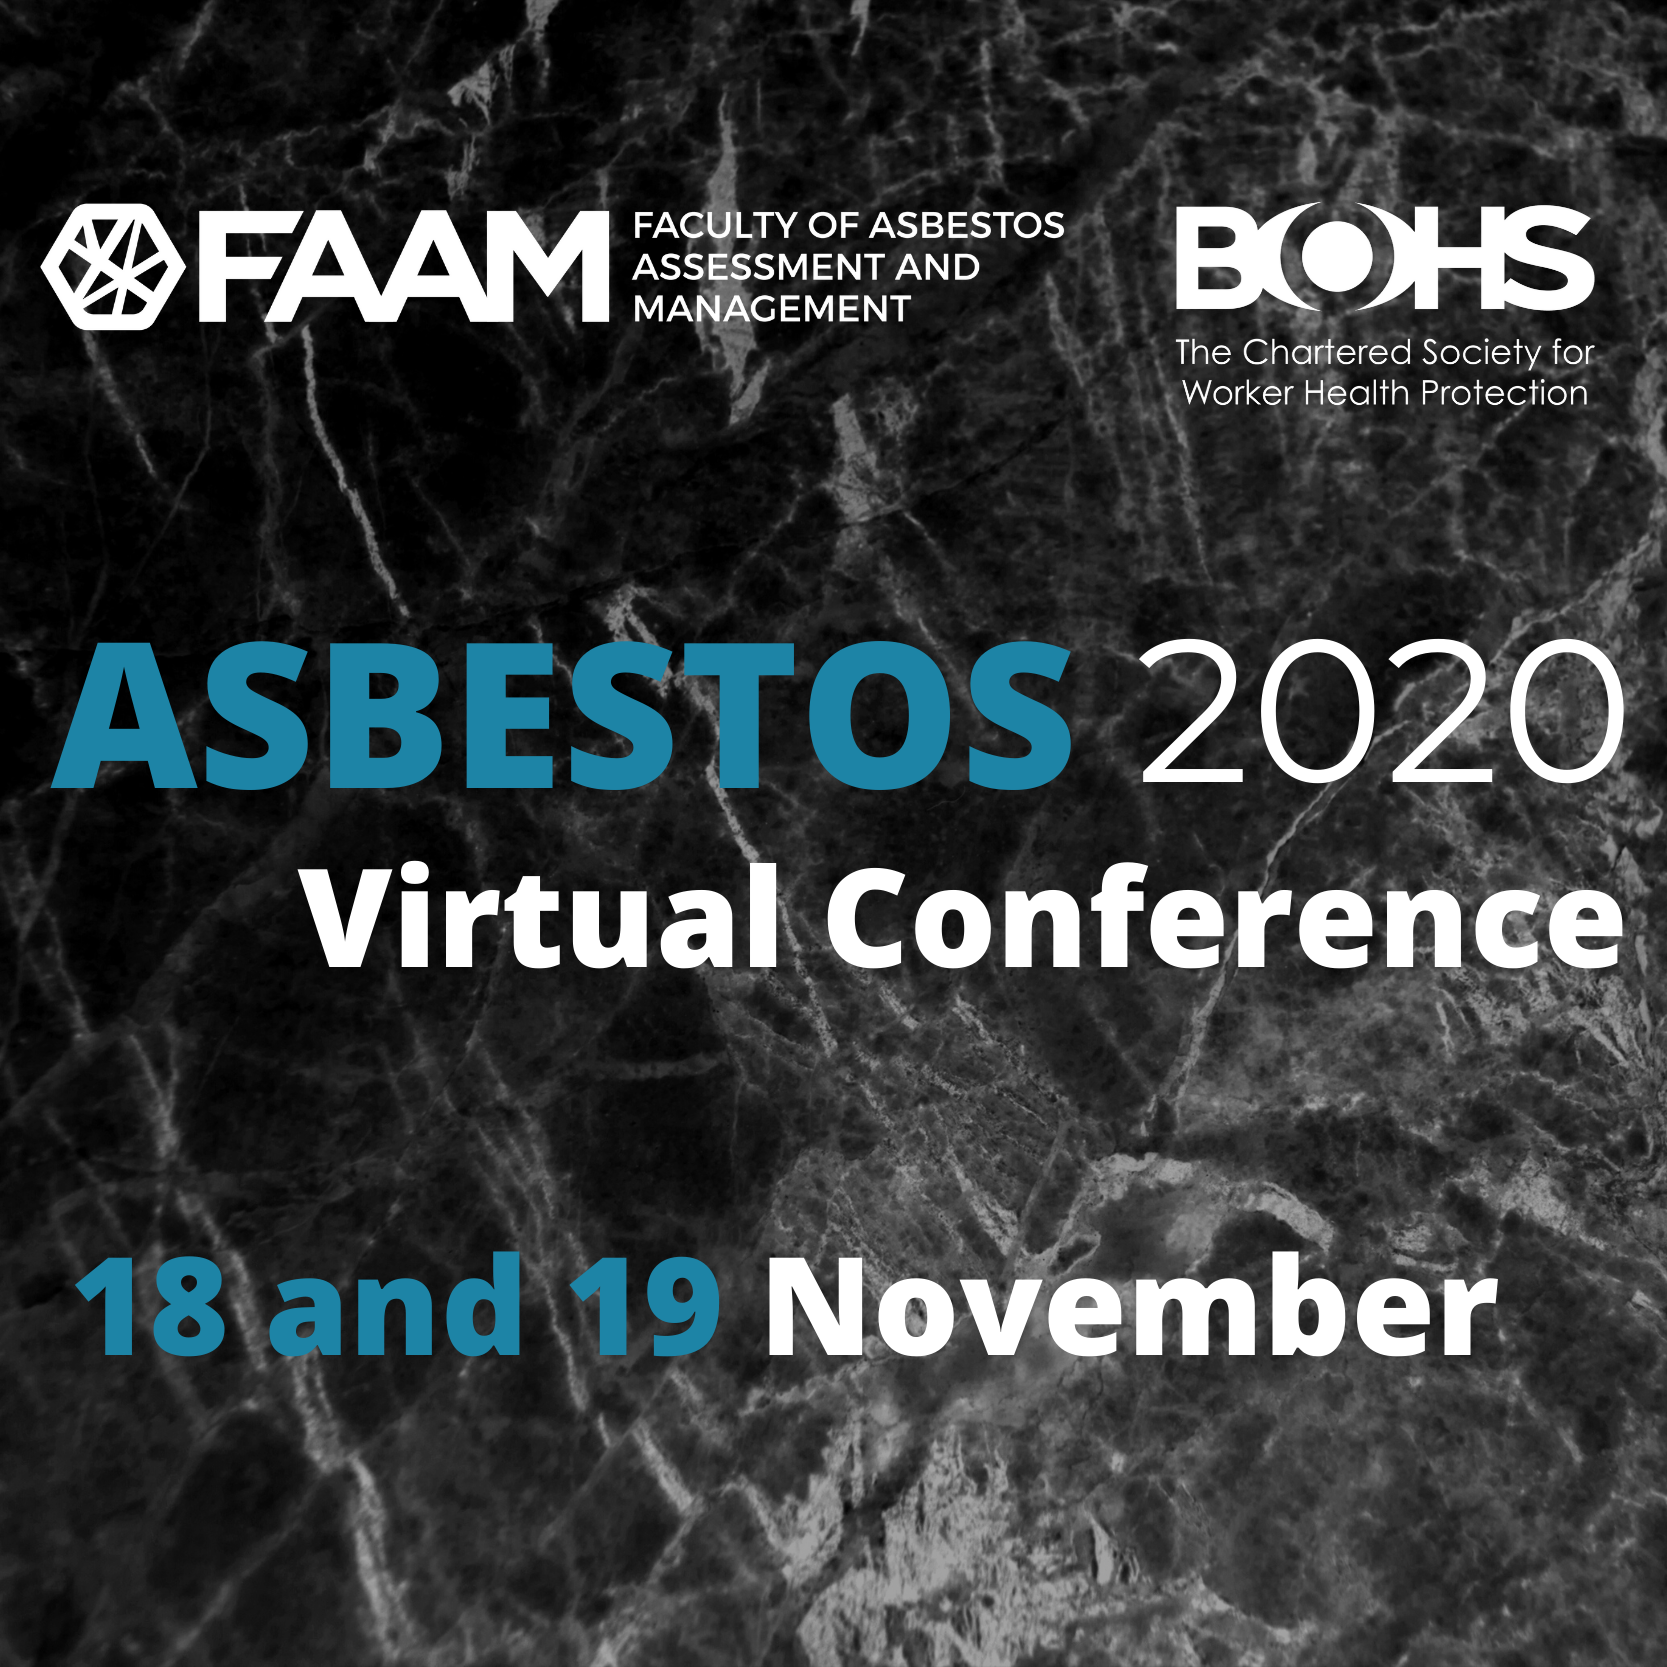 Asbestos 2020 Virtual Conference 18 & 19 November 2020